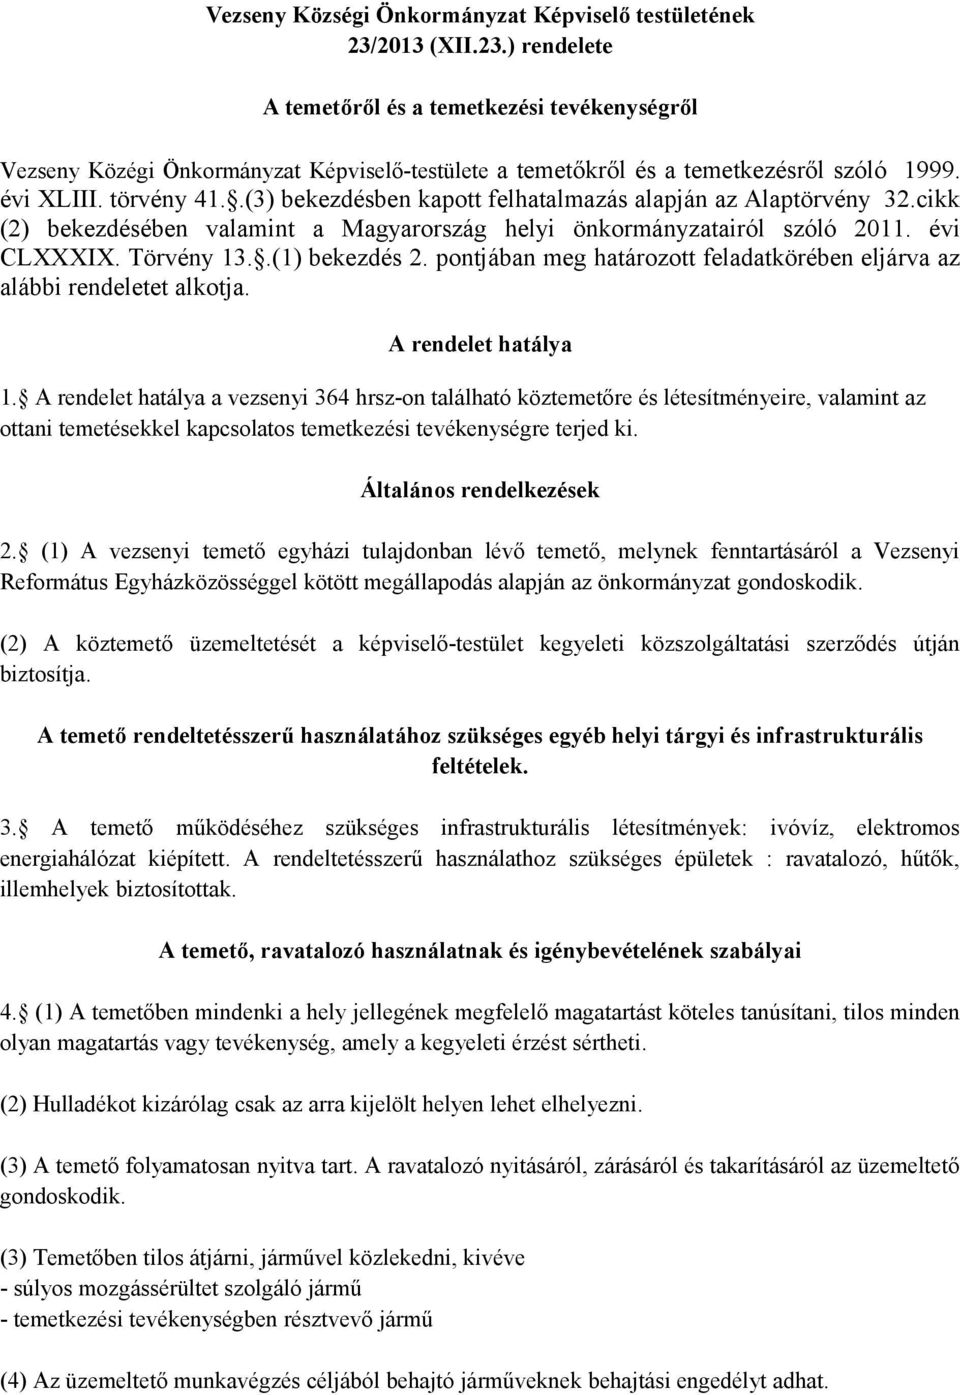 .(3) bekezdésben kapott felhatalmazás alapján az Alaptörvény 32.cikk (2) bekezdésében valamint a Magyarország helyi önkormányzatairól szóló 2011. évi CLXXXIX. Törvény 13..(1) bekezdés 2.